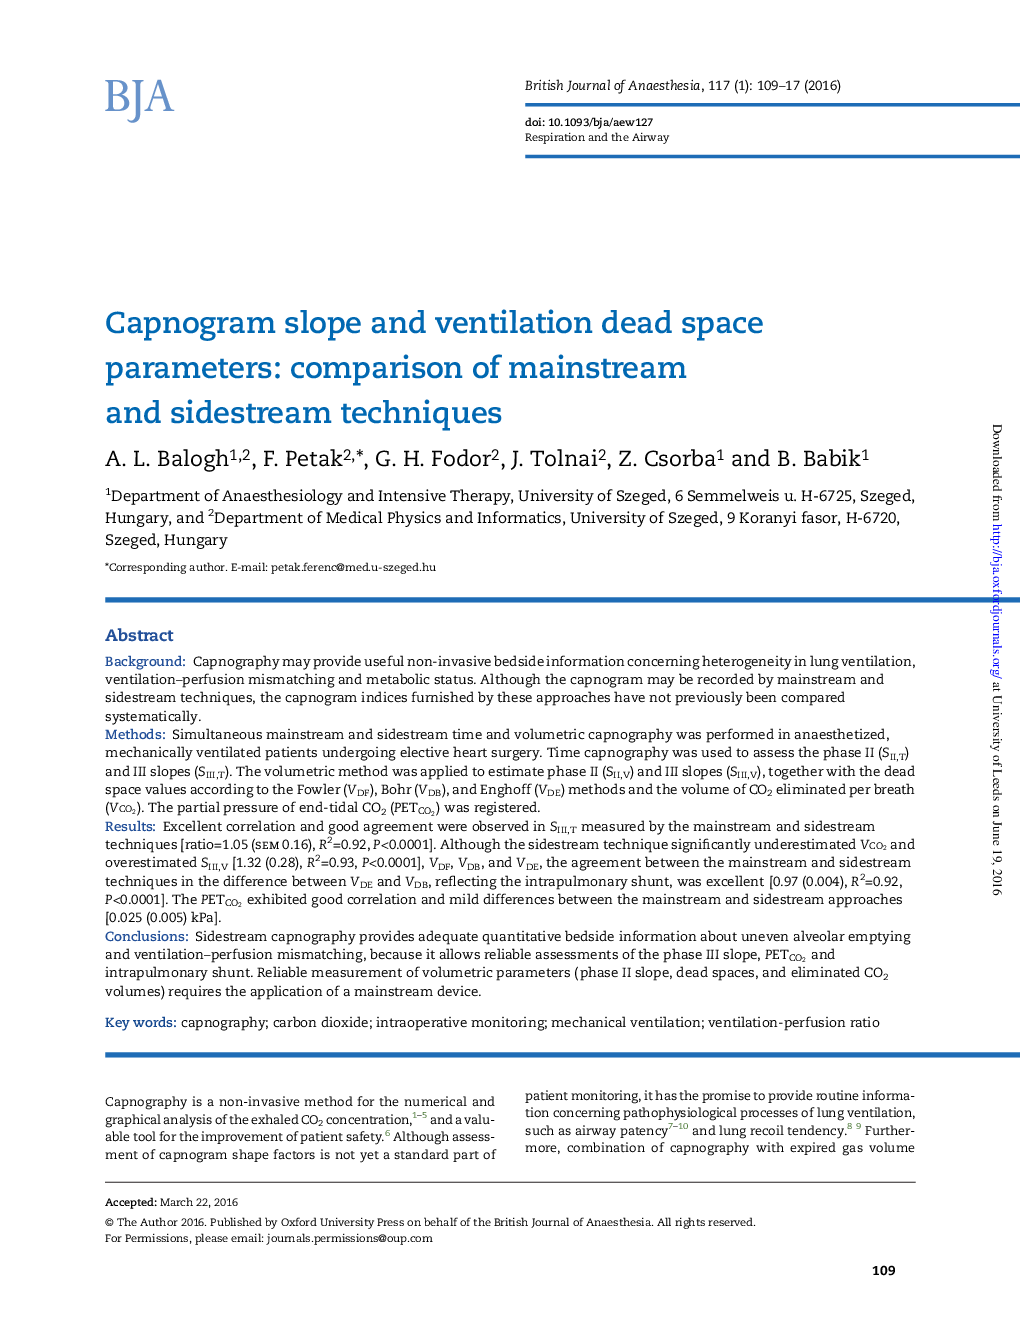 شیب کپنوگرافی و پارامترهای فضای مرطوب تهویه: مقایسه تکنیک های جریان اصلی و جانبی 